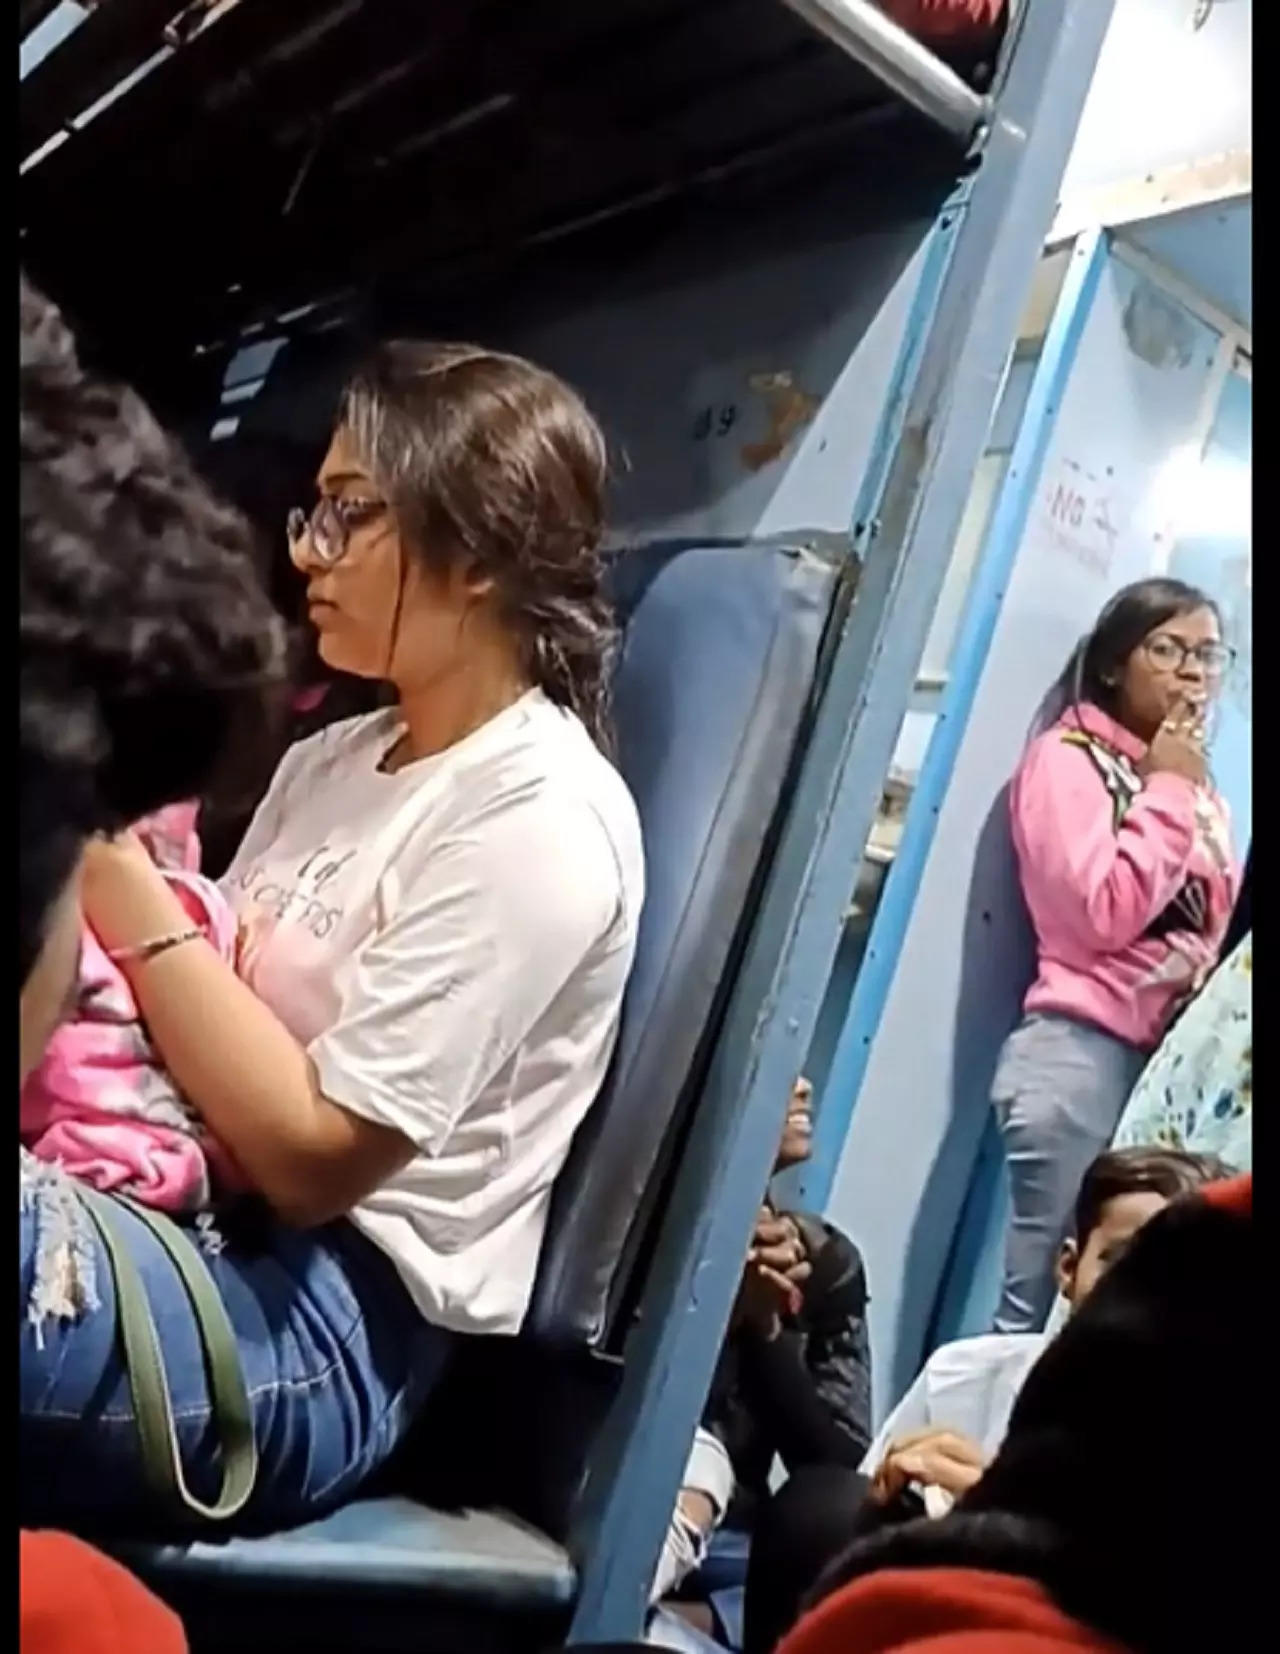 WATCH Women smoke marijuana inside train Railways responds after passenger shares video